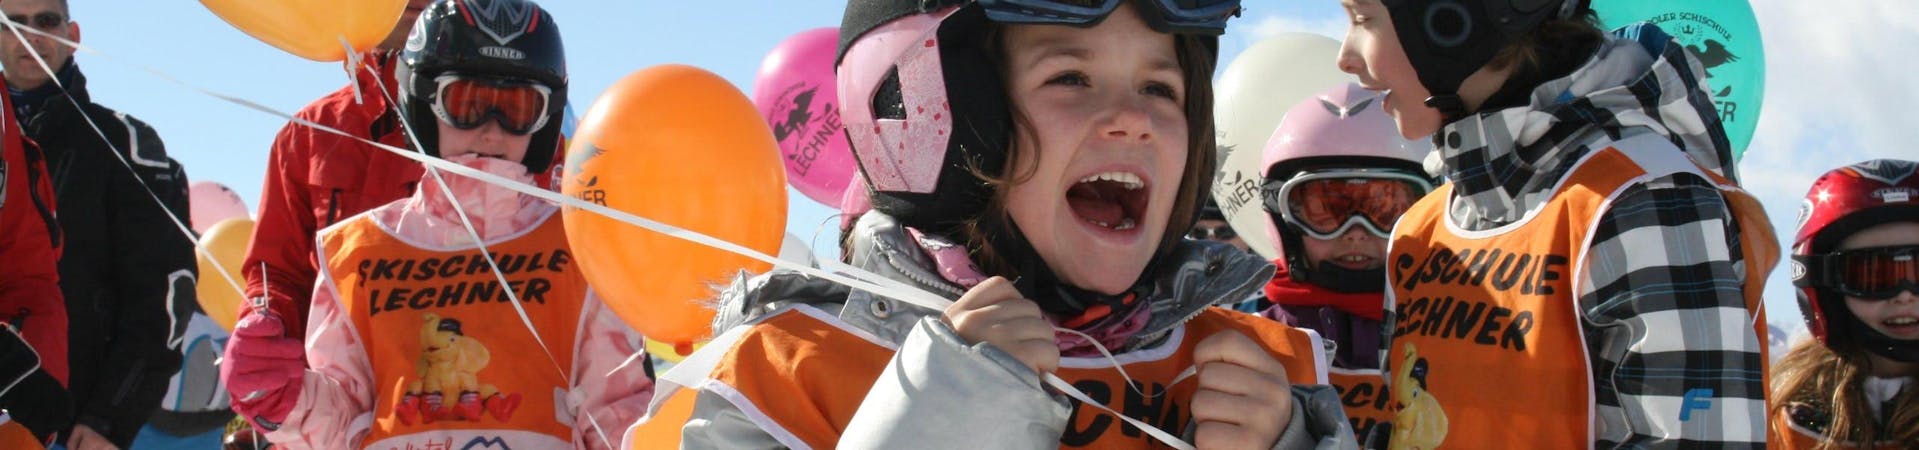 Verschillende kinderen die deelnemen aan de skilessen voor kinderen (5-14 jaar) voor Gevorderden, georganiseerd door de skischool Skischule Lechner, houden ballonnen vast met het logo van de skischool erop gedrukt.